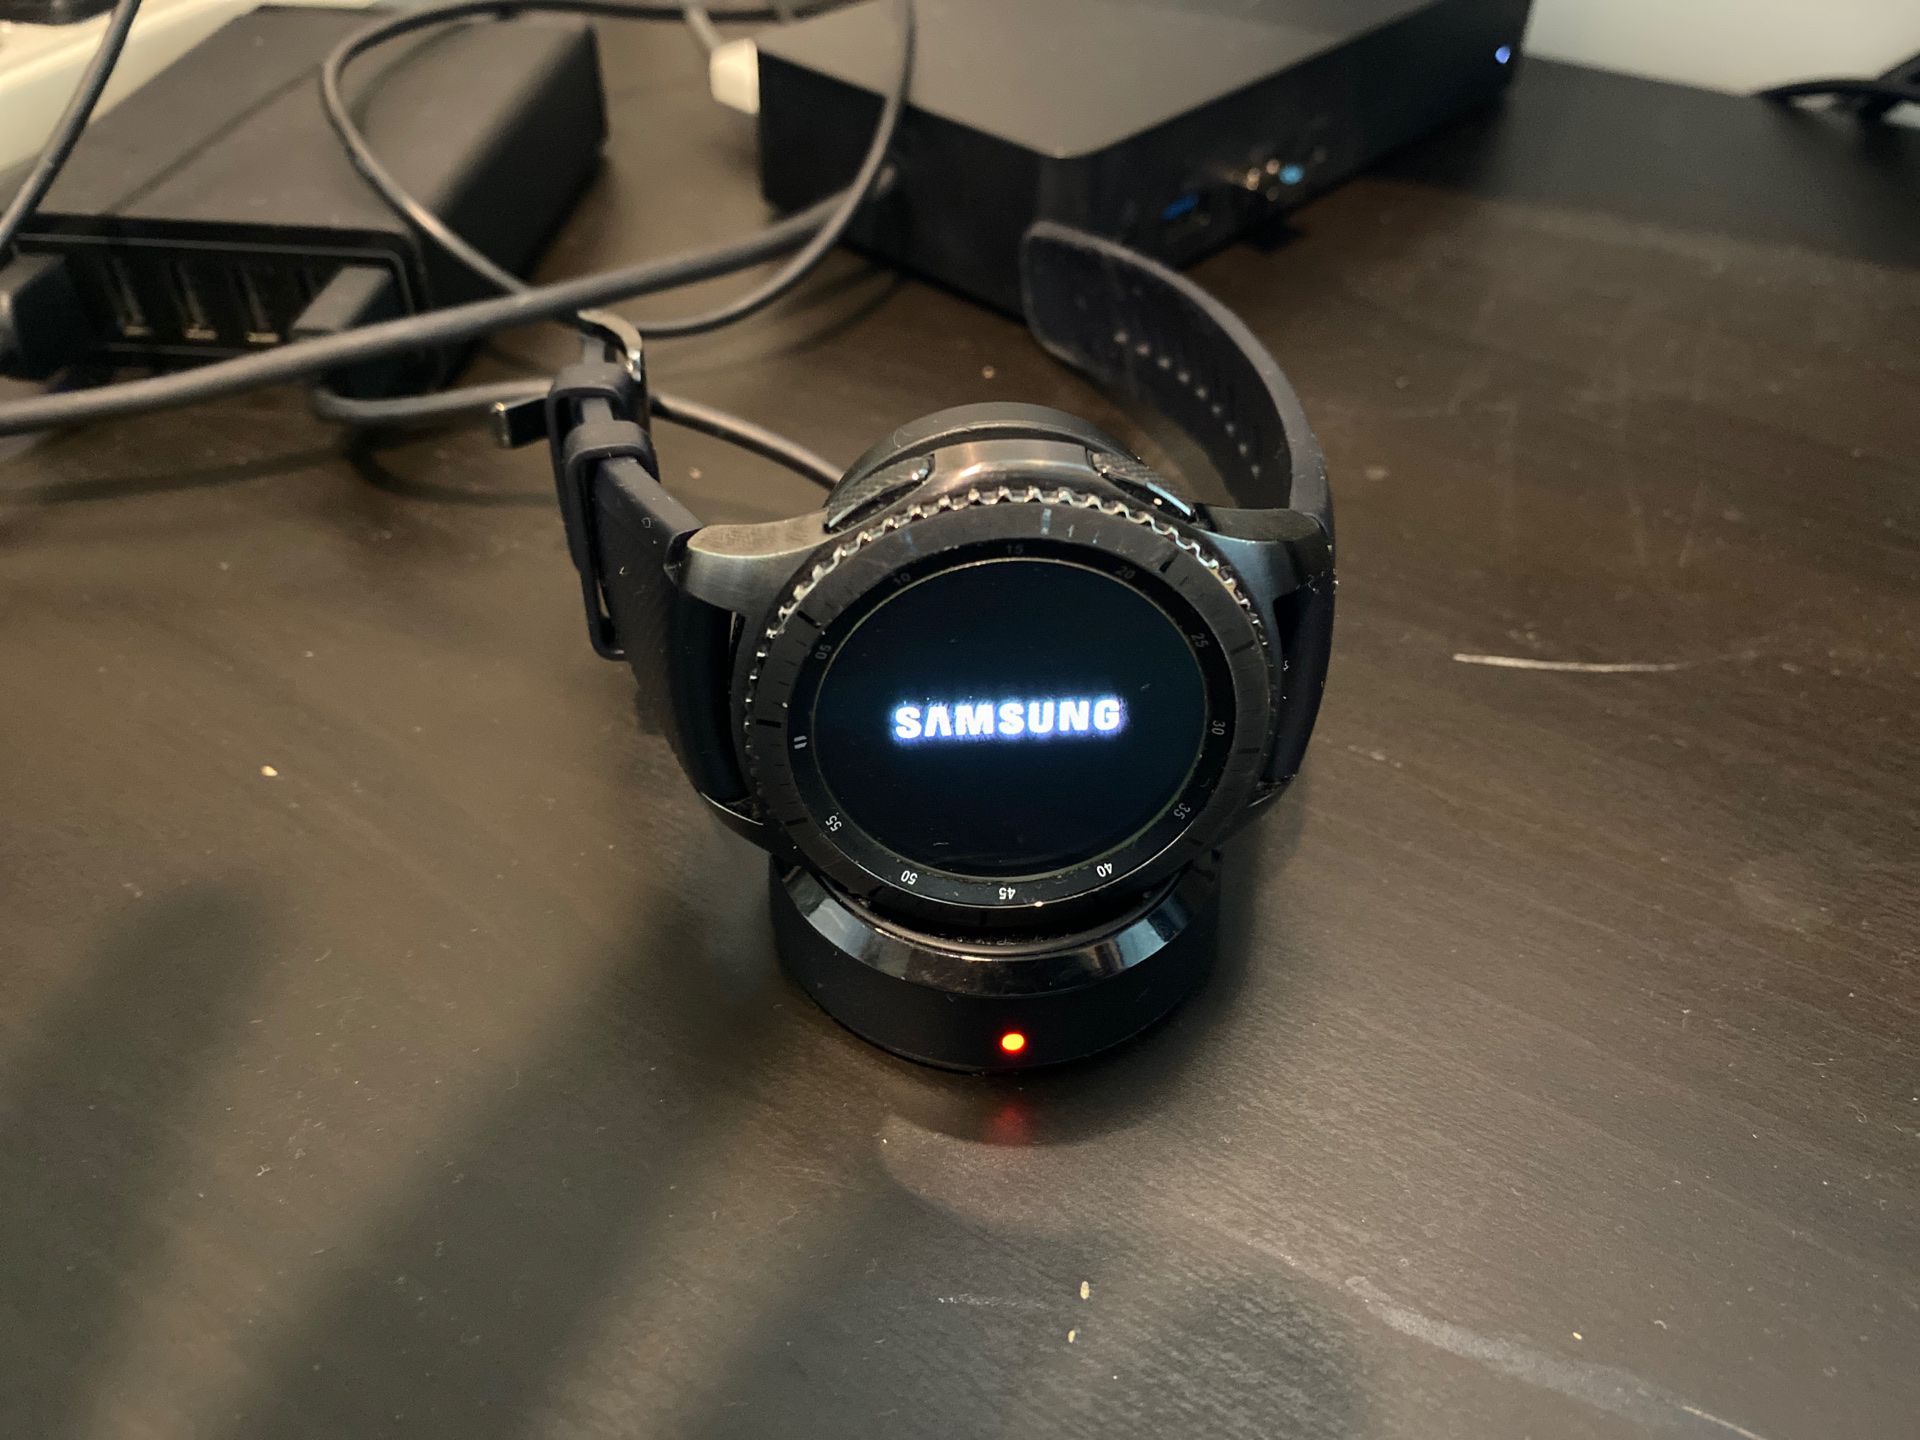 Samsung smart watch gear s3 frontier like new